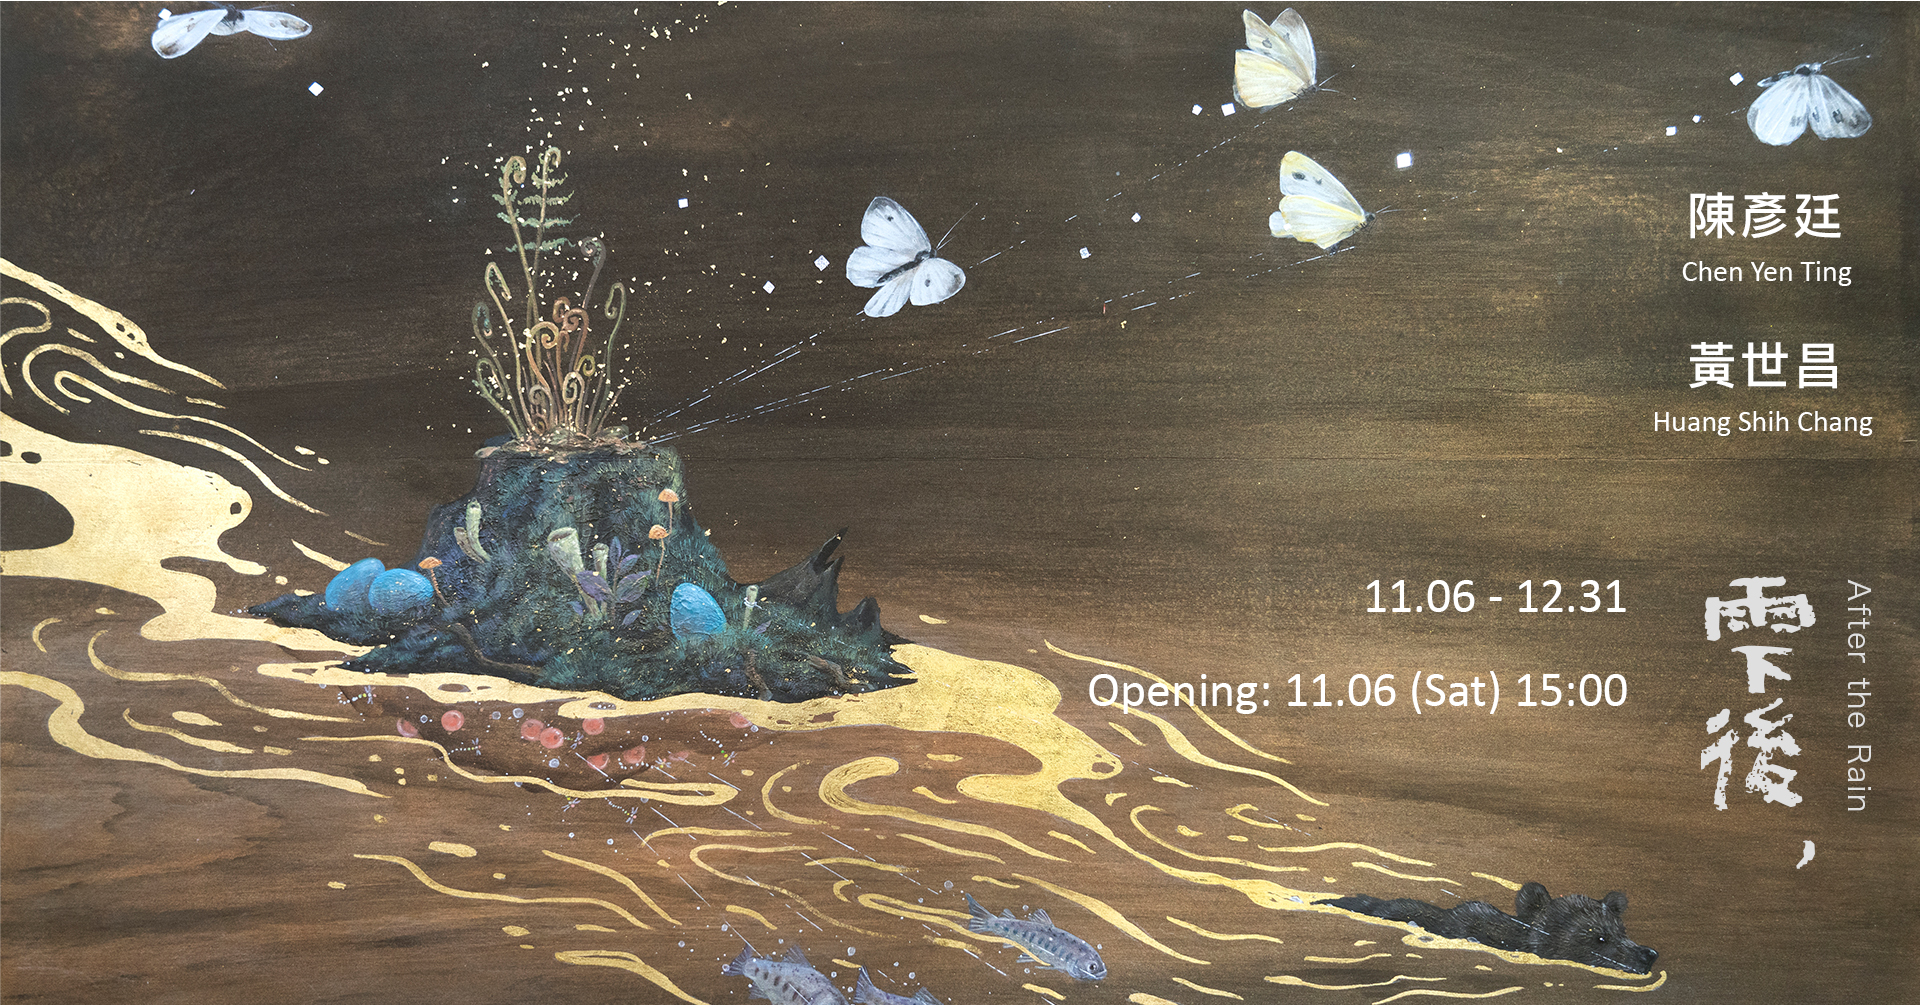 雫後 - 黃世昌｜陳彥廷聯展After the Rain -  Huang Shih Chang｜Chen Yen Ting  Group Exhibition